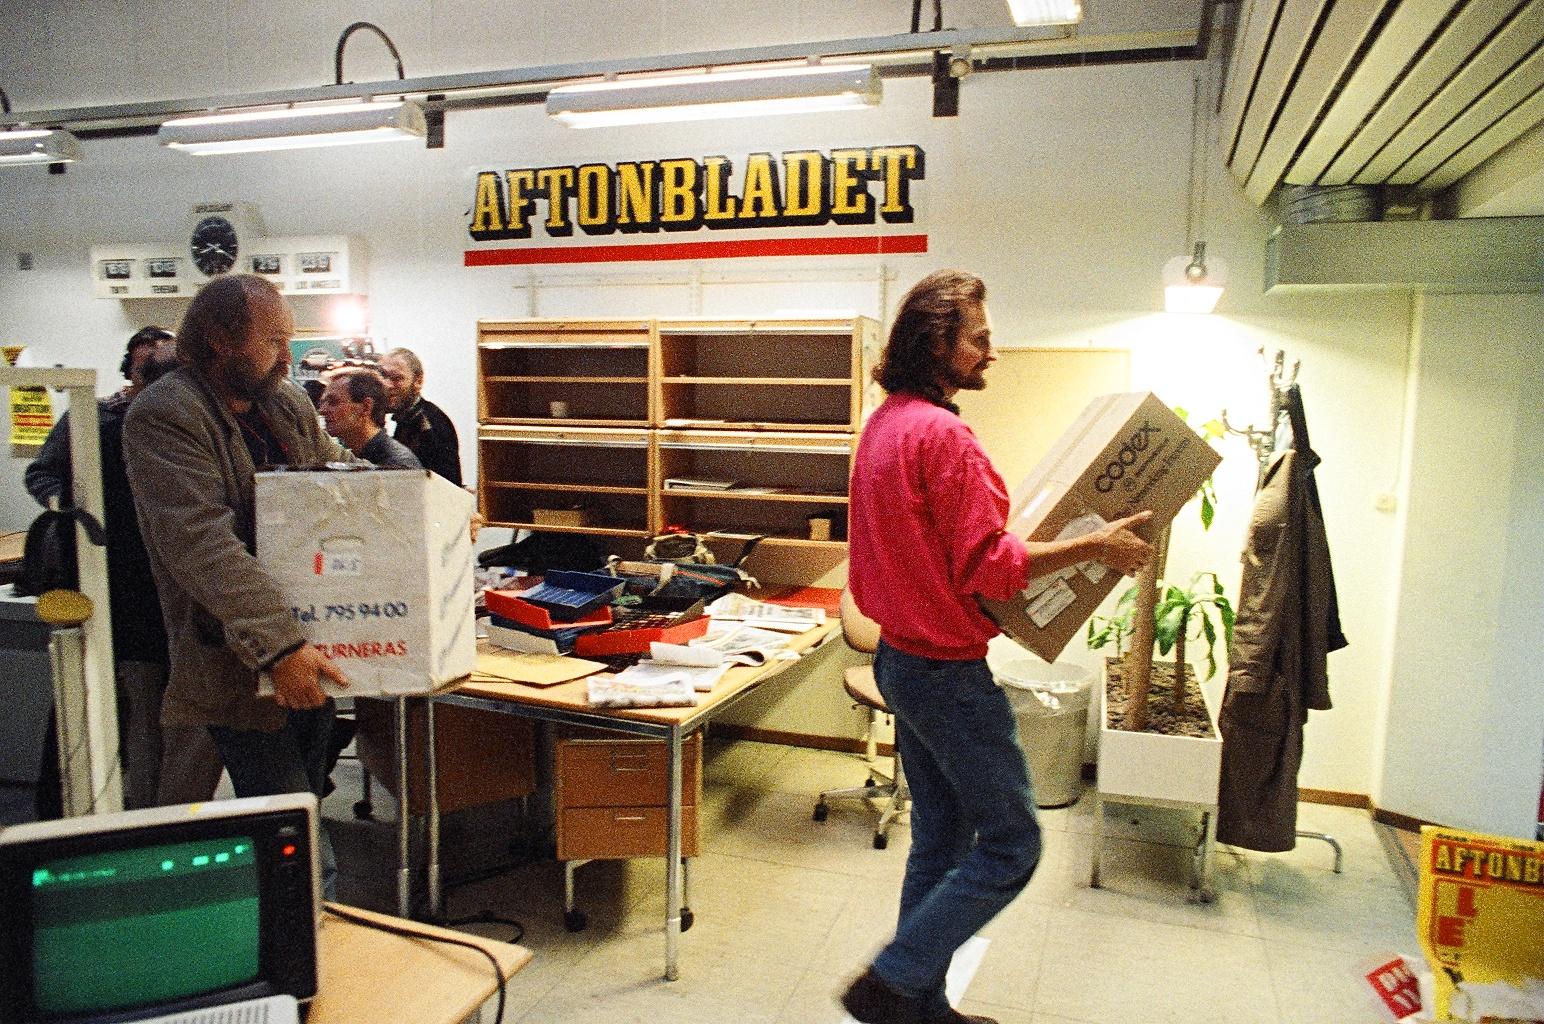 1989 Flyttlasset går – från Klara till Globen. Fotografen Peter Knopp och bildredaktören Pether Engström kånkar flyttkartonger på centralredaktionen.